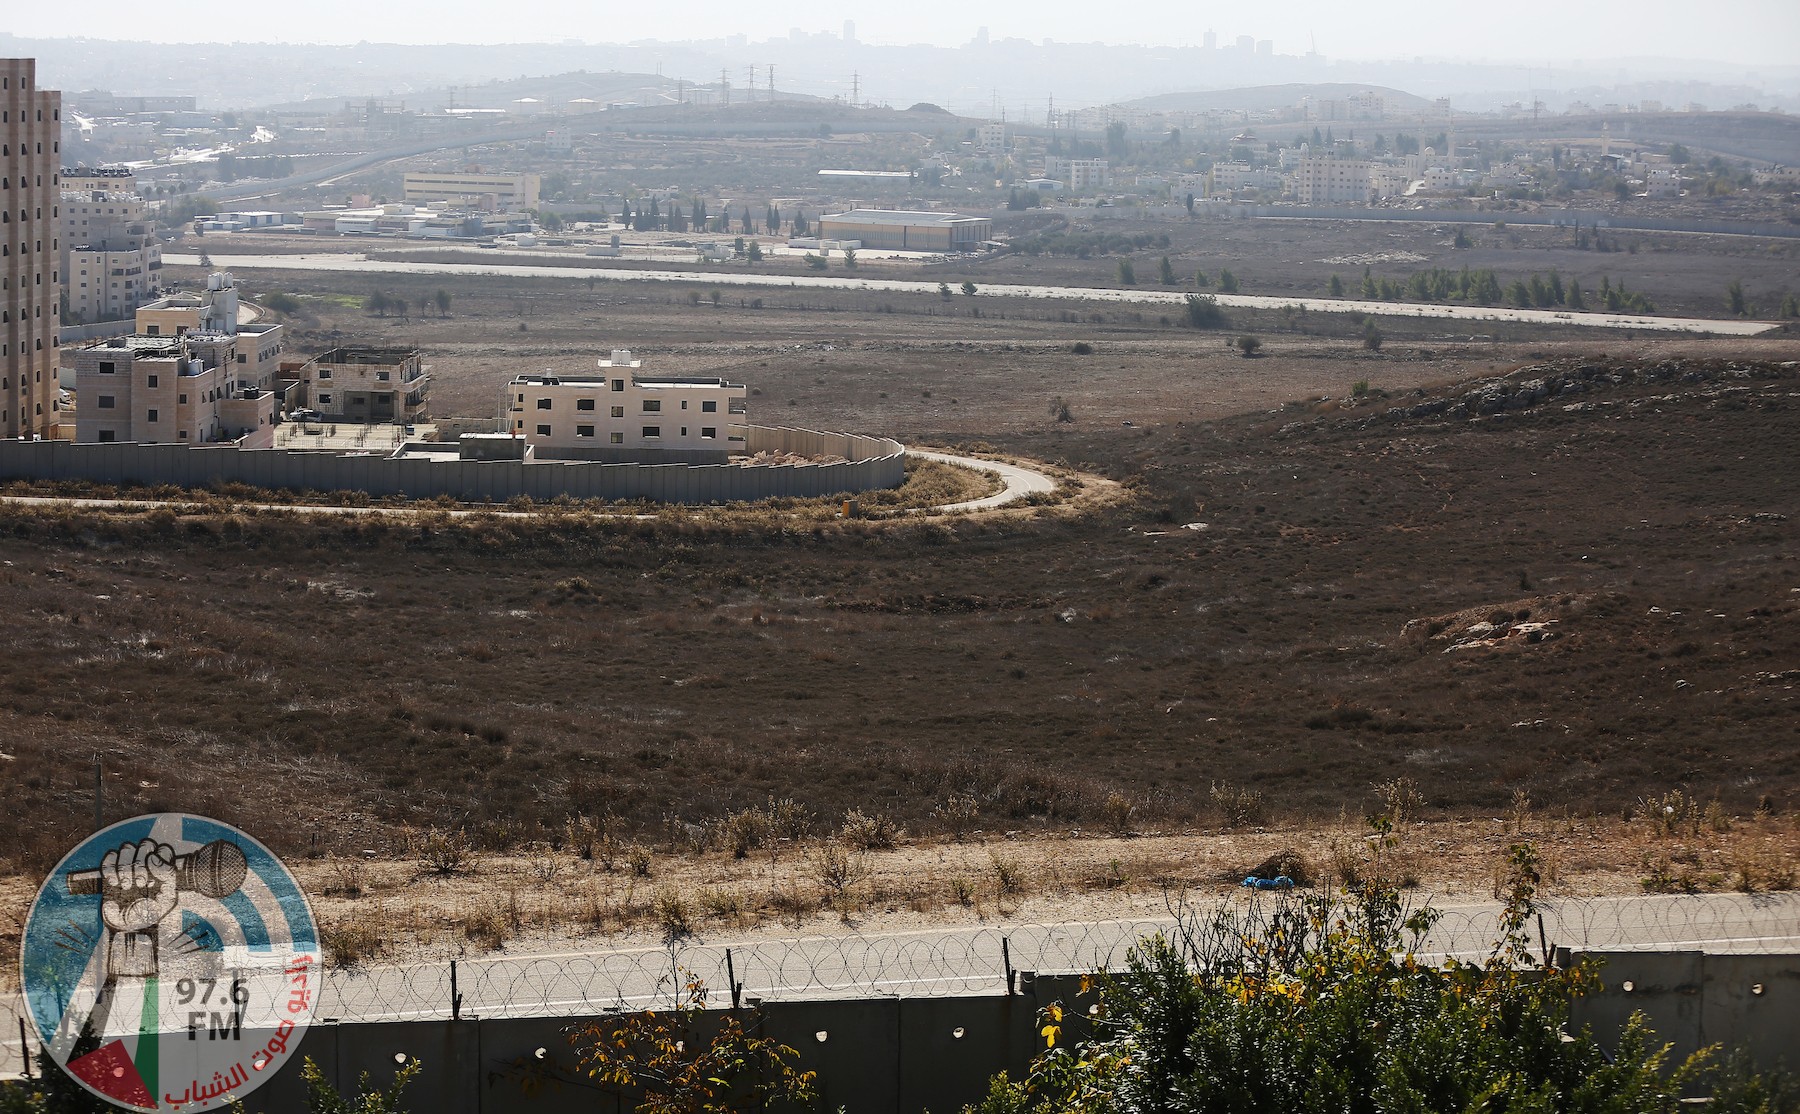 مخطط إسرائيلي لبناء 9 آلاف وحدة استيطانية على أرض مطار القدس